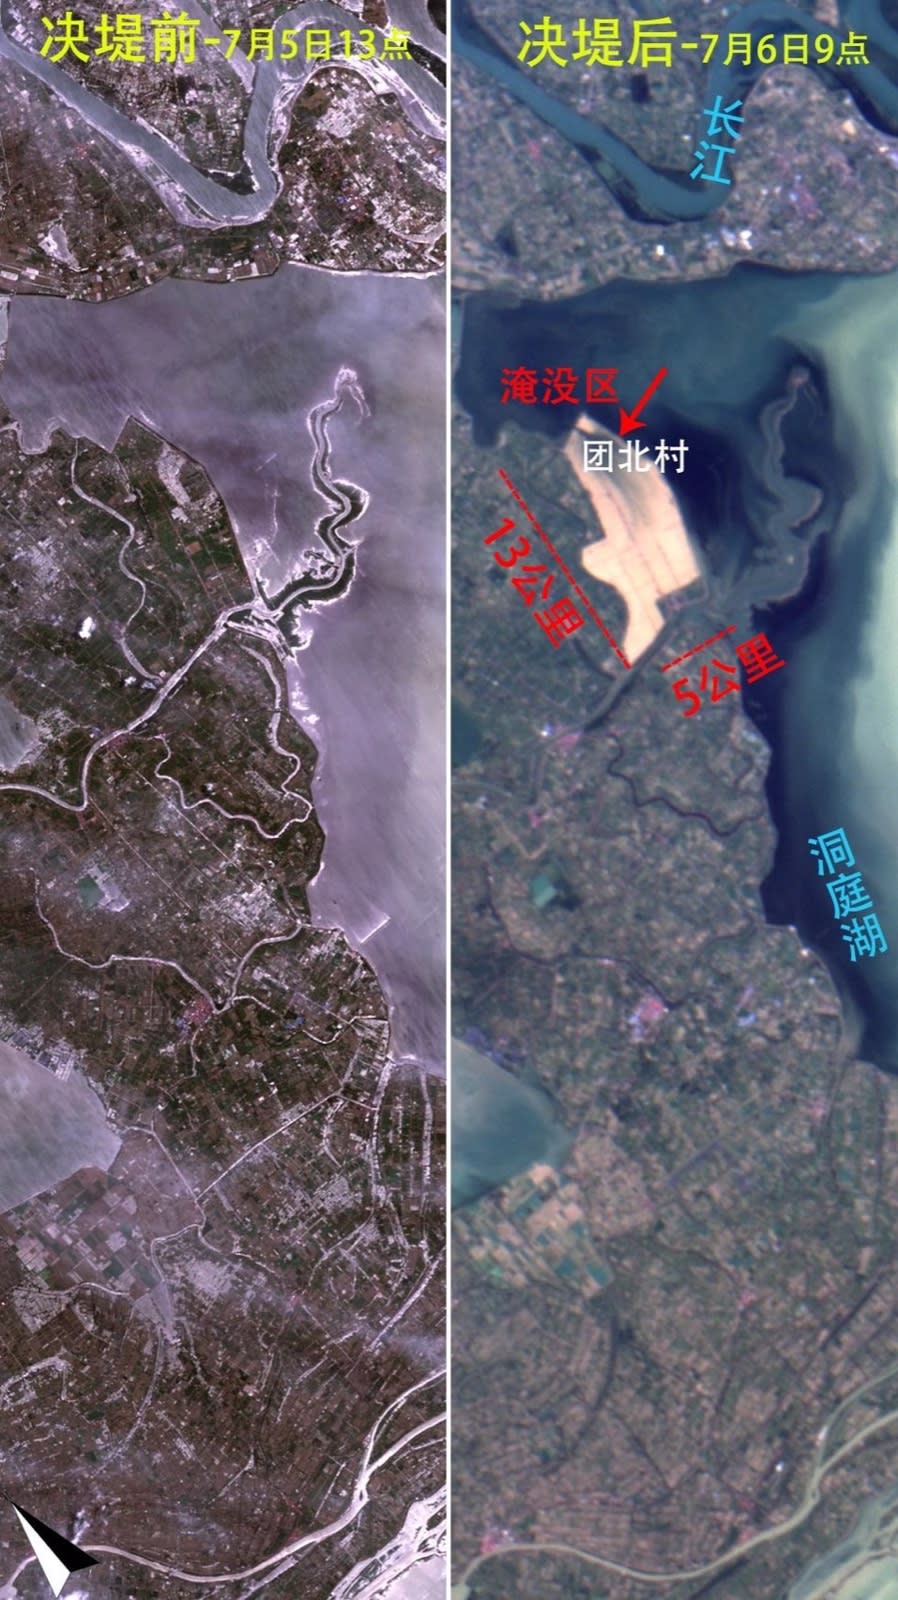 中國湖南省華容縣的洞庭湖一線堤防5日下午決堤，衛星照顯示湖水淹沒大片陸地。翻攝微信＠中國陸地觀測衛星數據中心